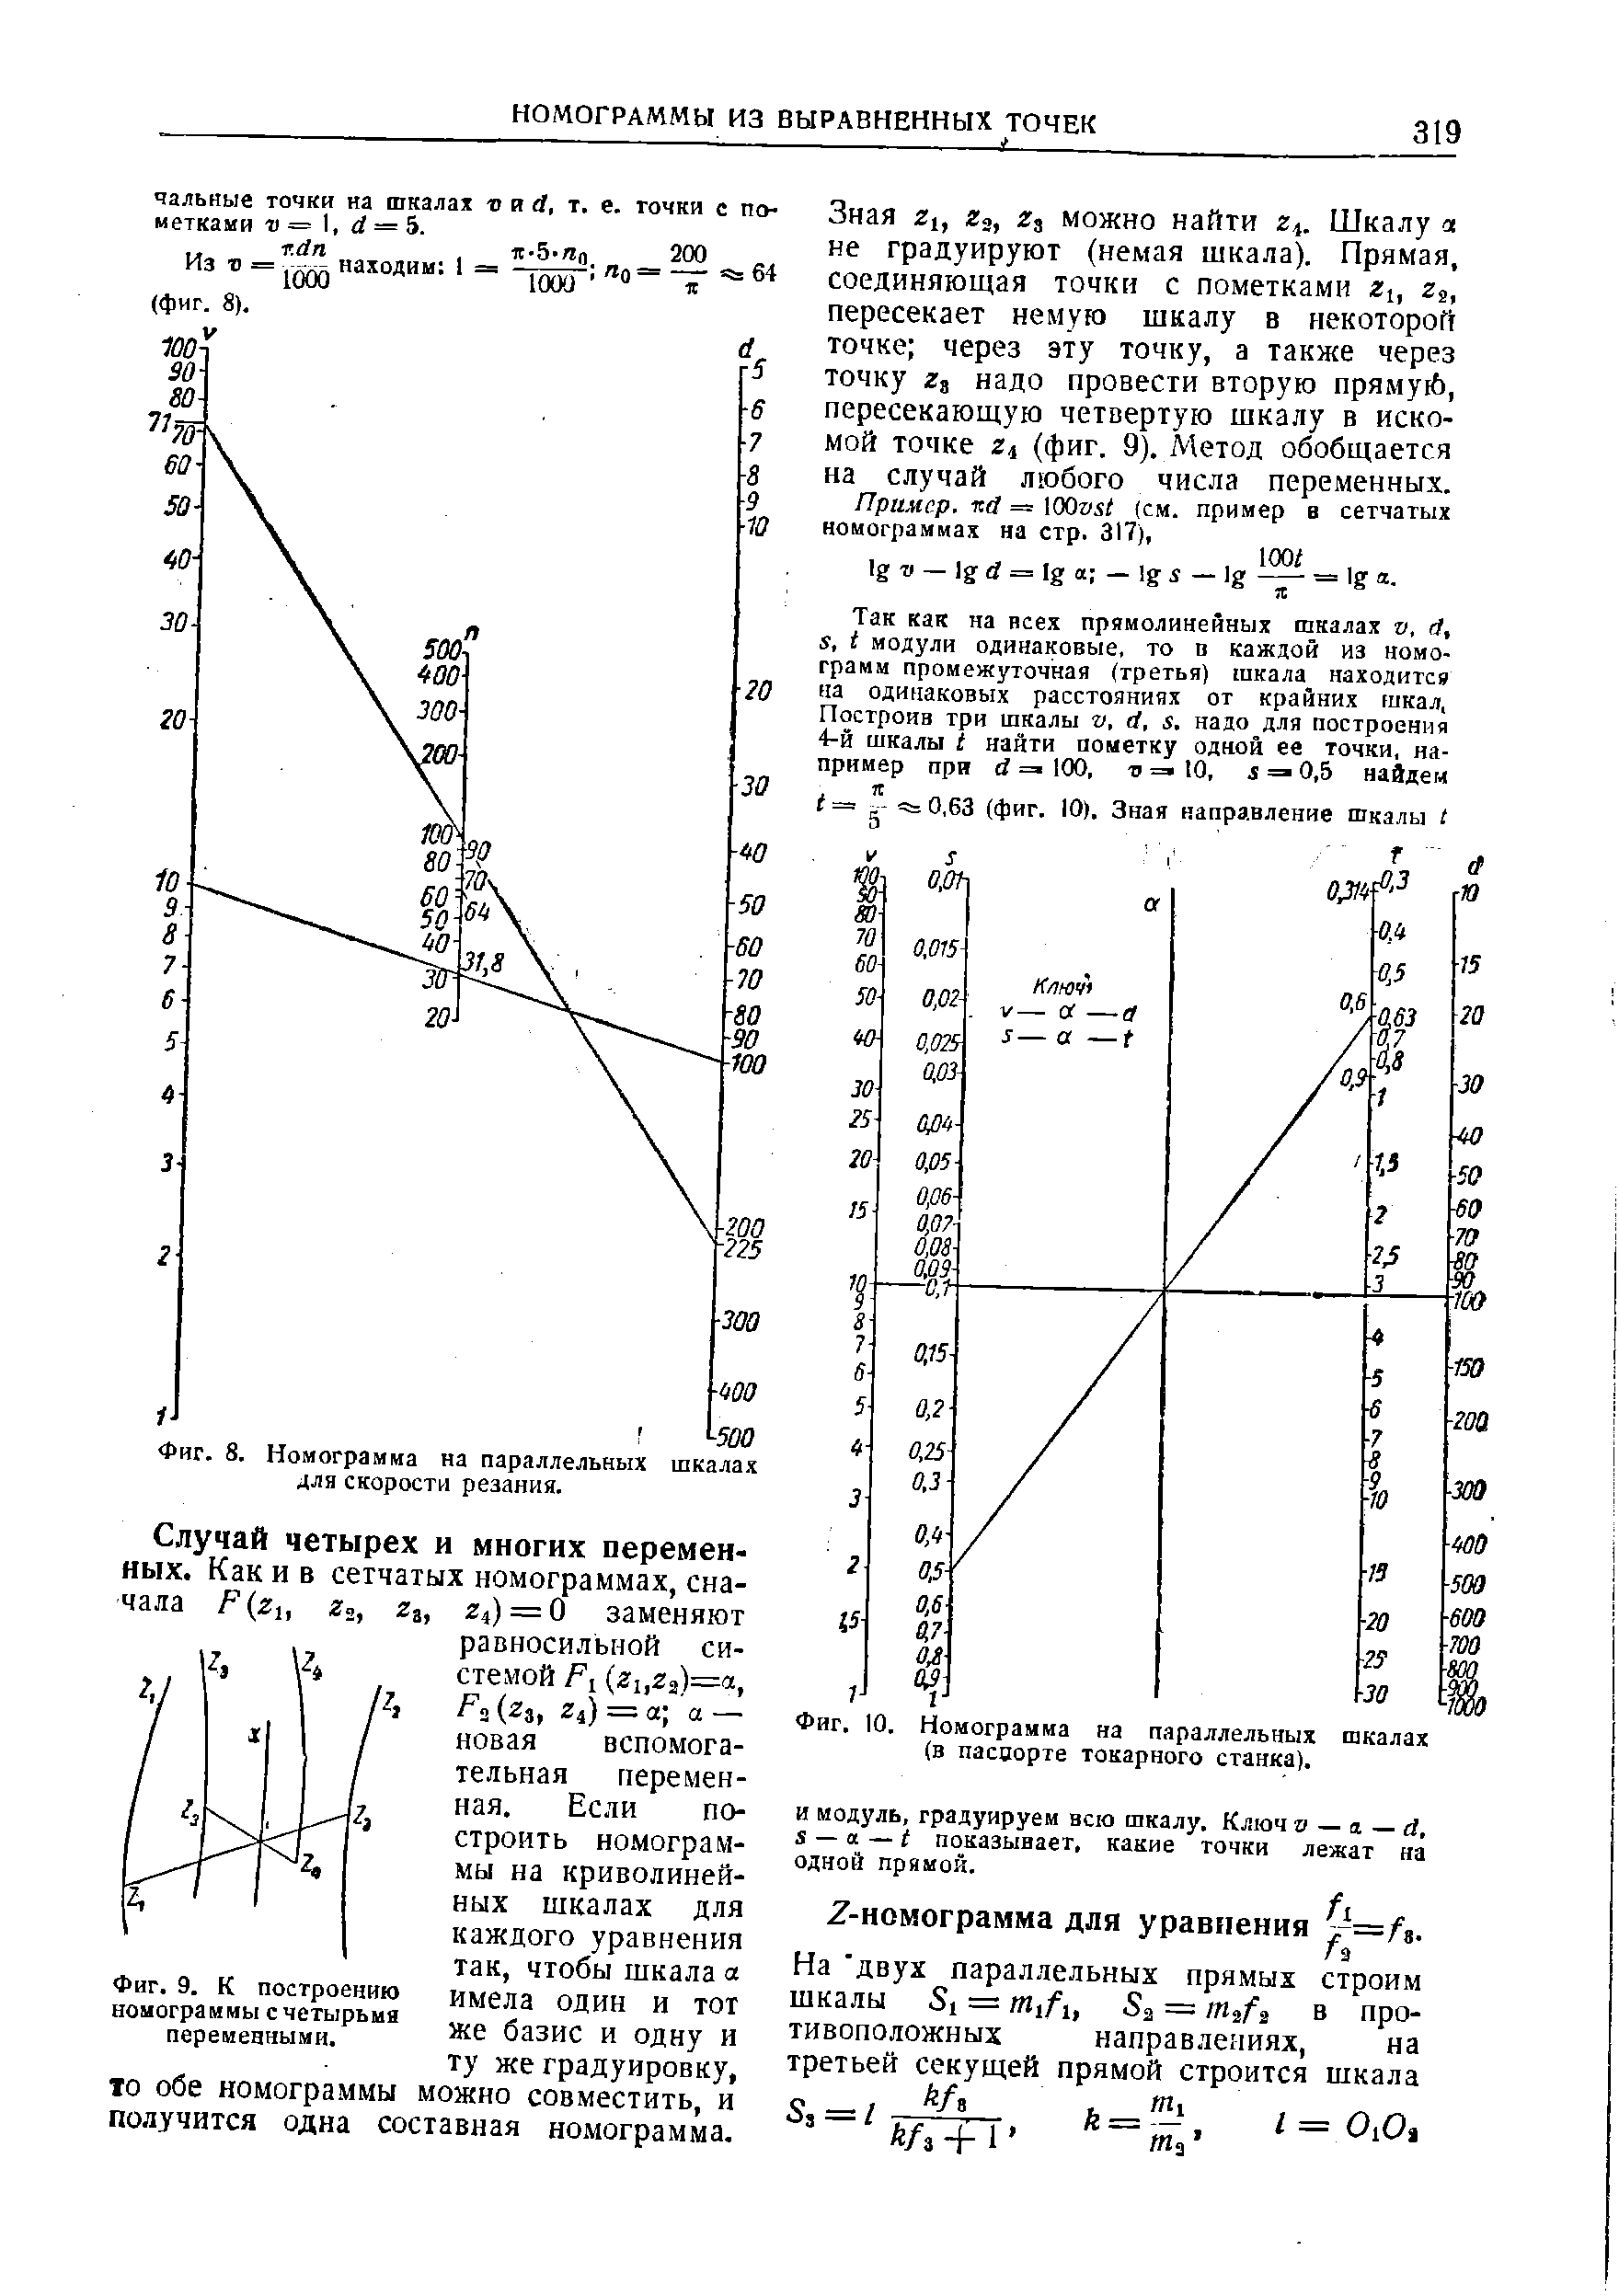 Фиг. Ю. Номограмма на параллельных шкалах (в паспорте токарного станка).
